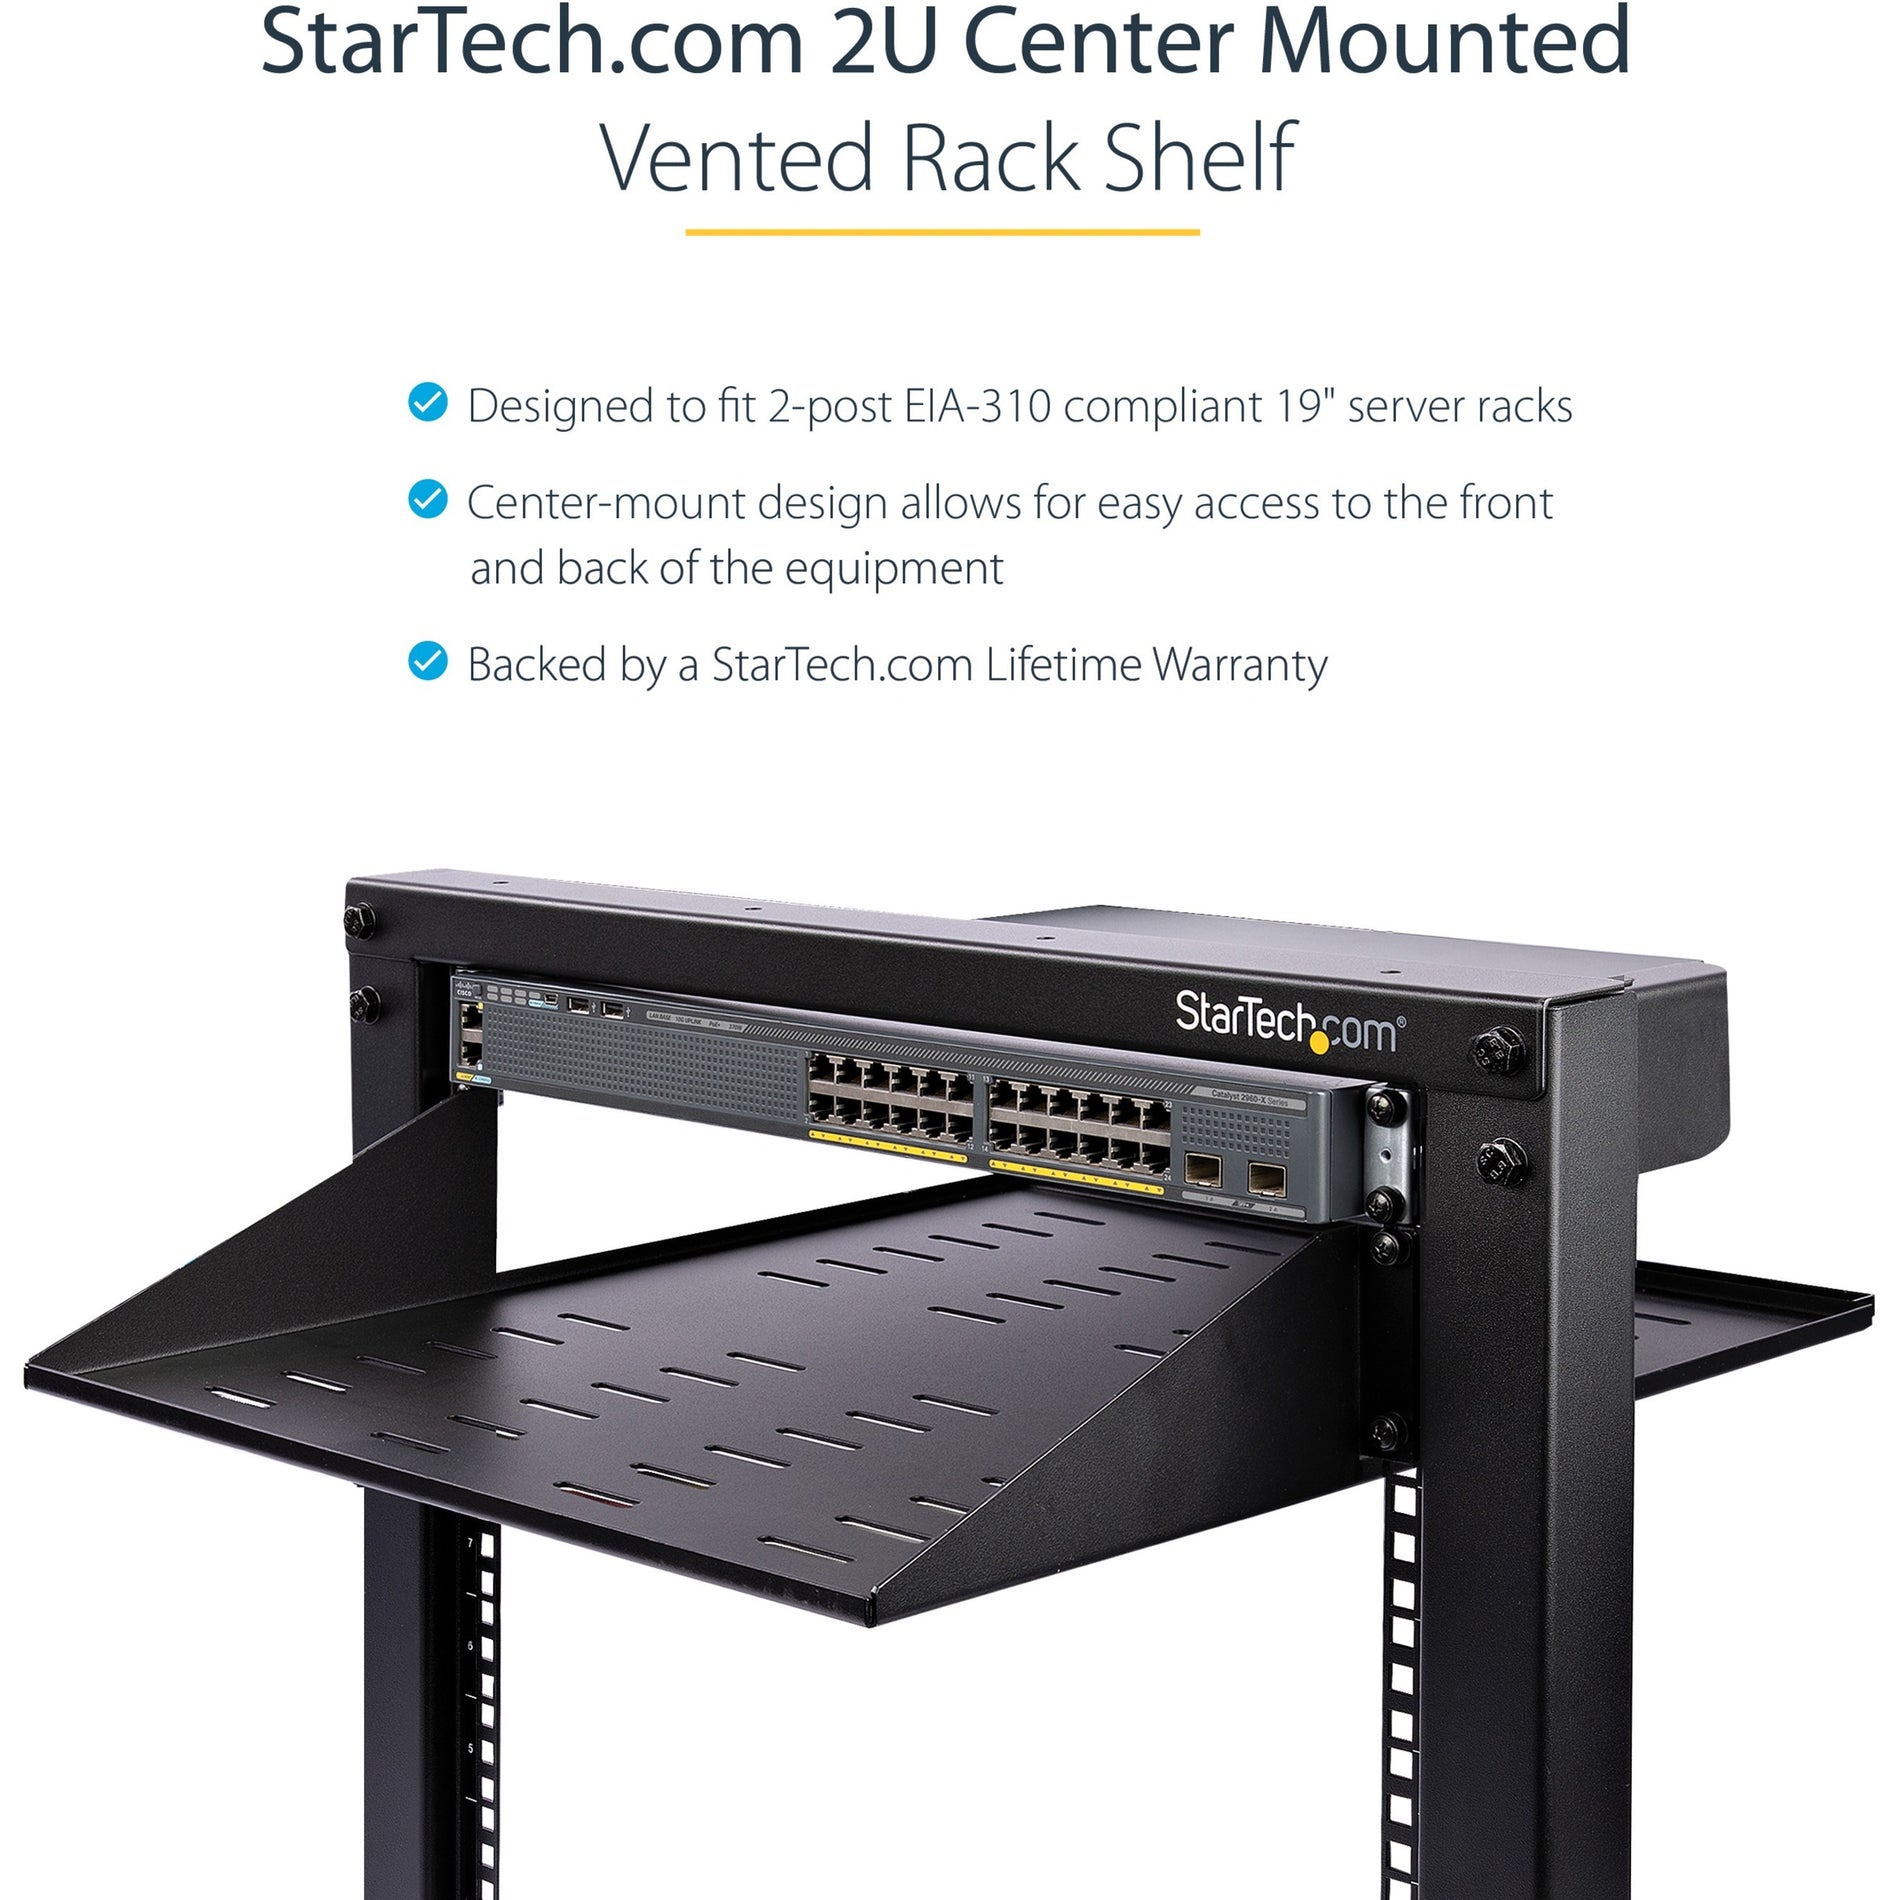 StarTech.com SHELF-2U-14-CENTER-V Universal Rack Shelf, Vented 2U Cantilever Tray for 19" Data/AV/Network Enclosure